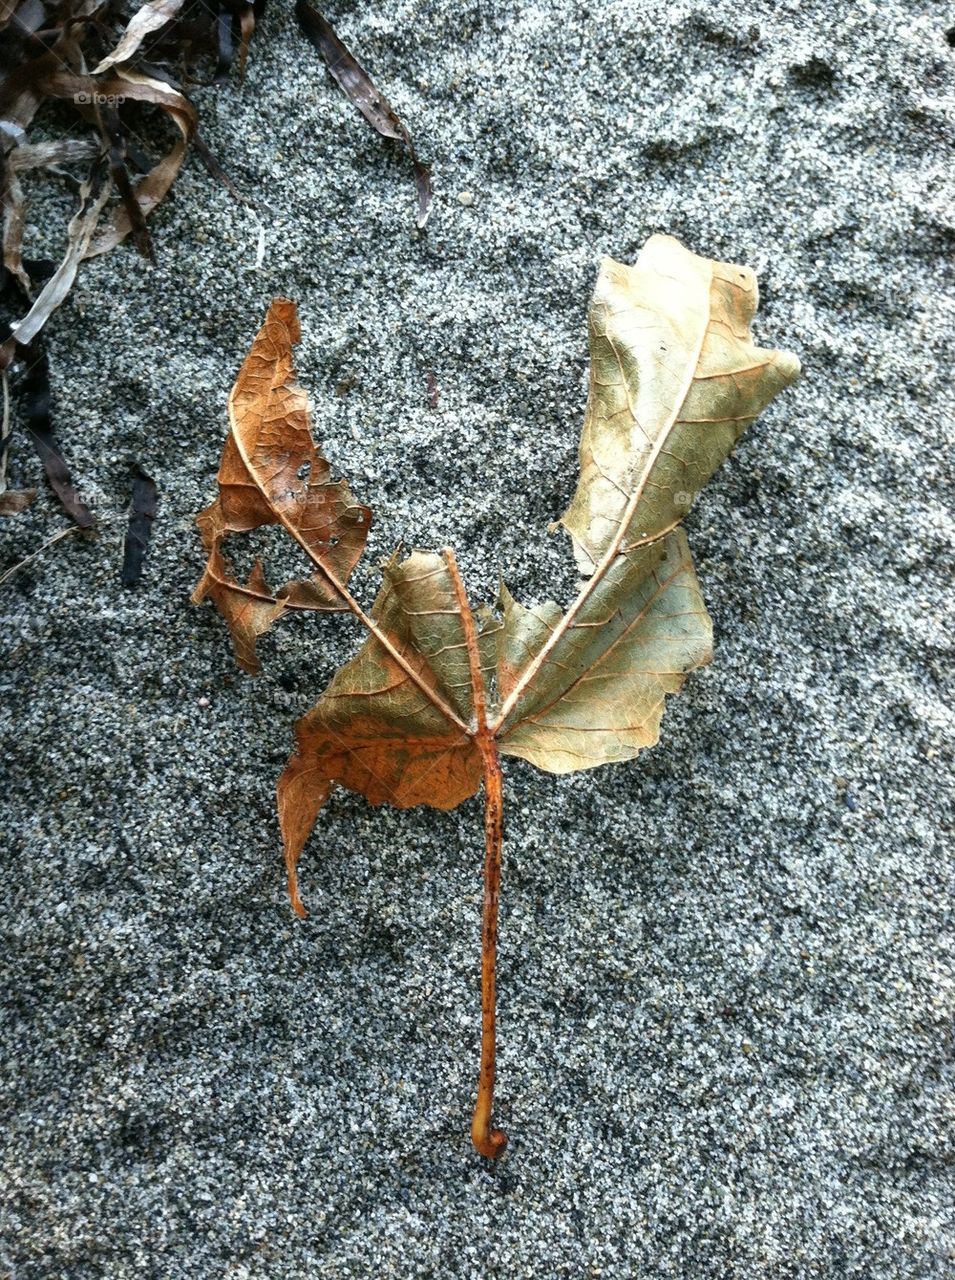 Dead leaf on the beach.